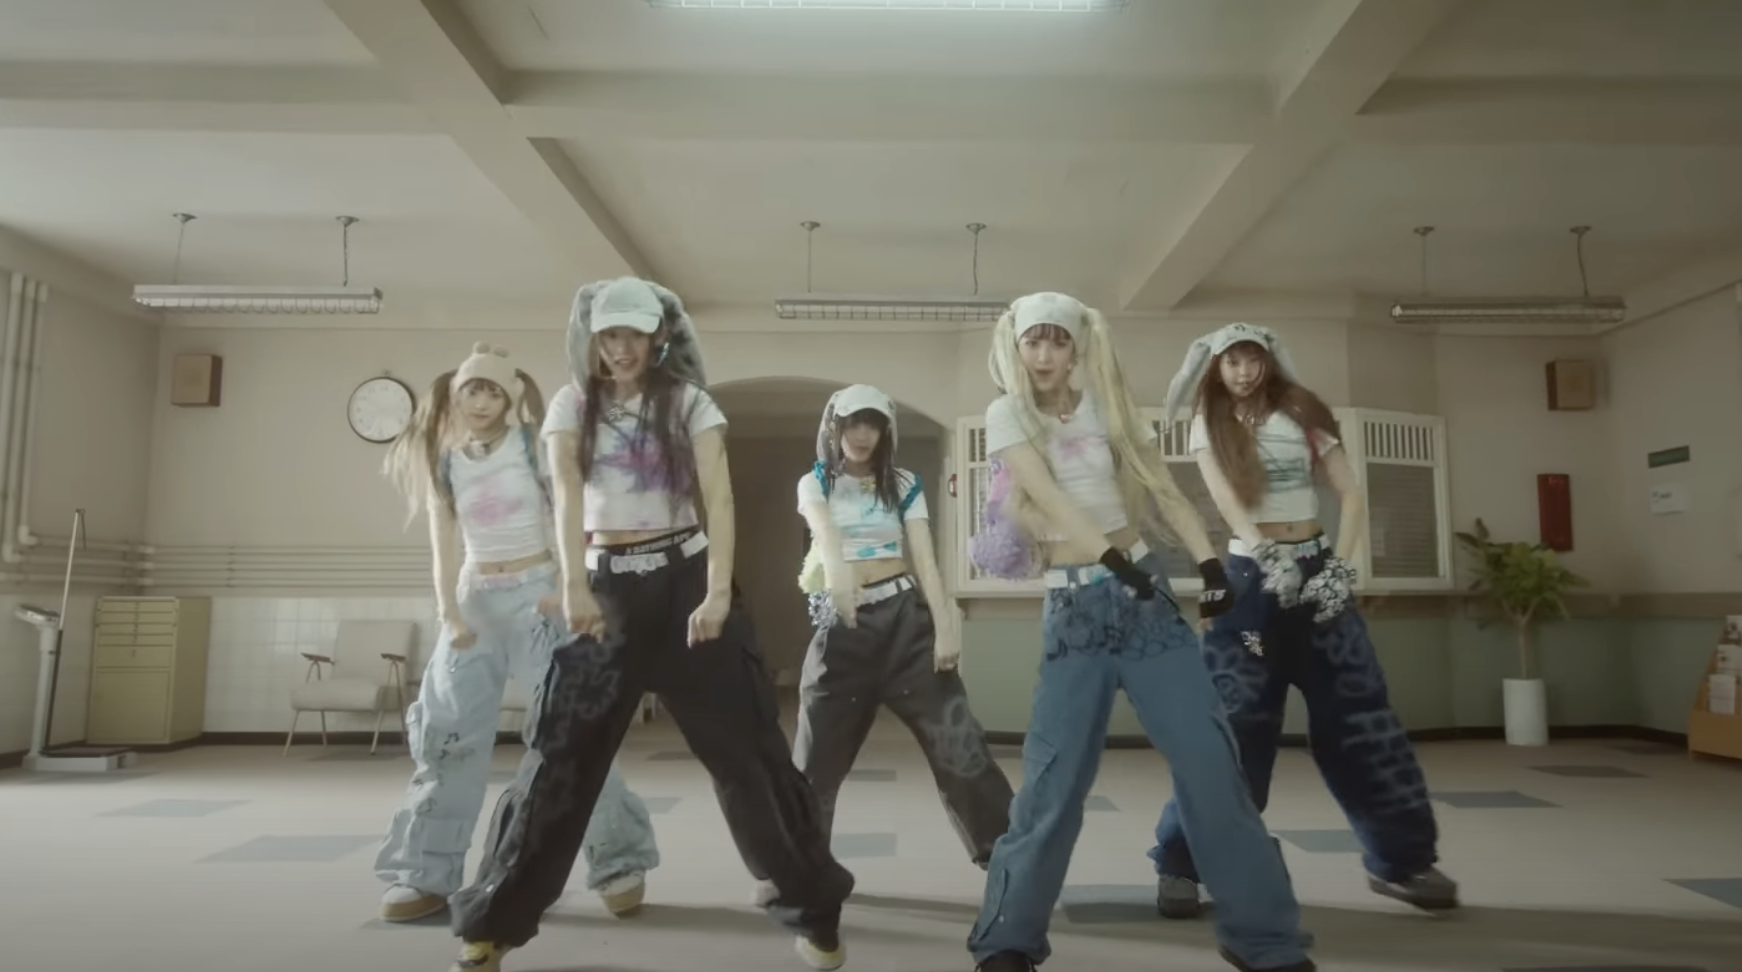 NewJeans' “Ditto” Performance Video Surpasses 100 Million Views